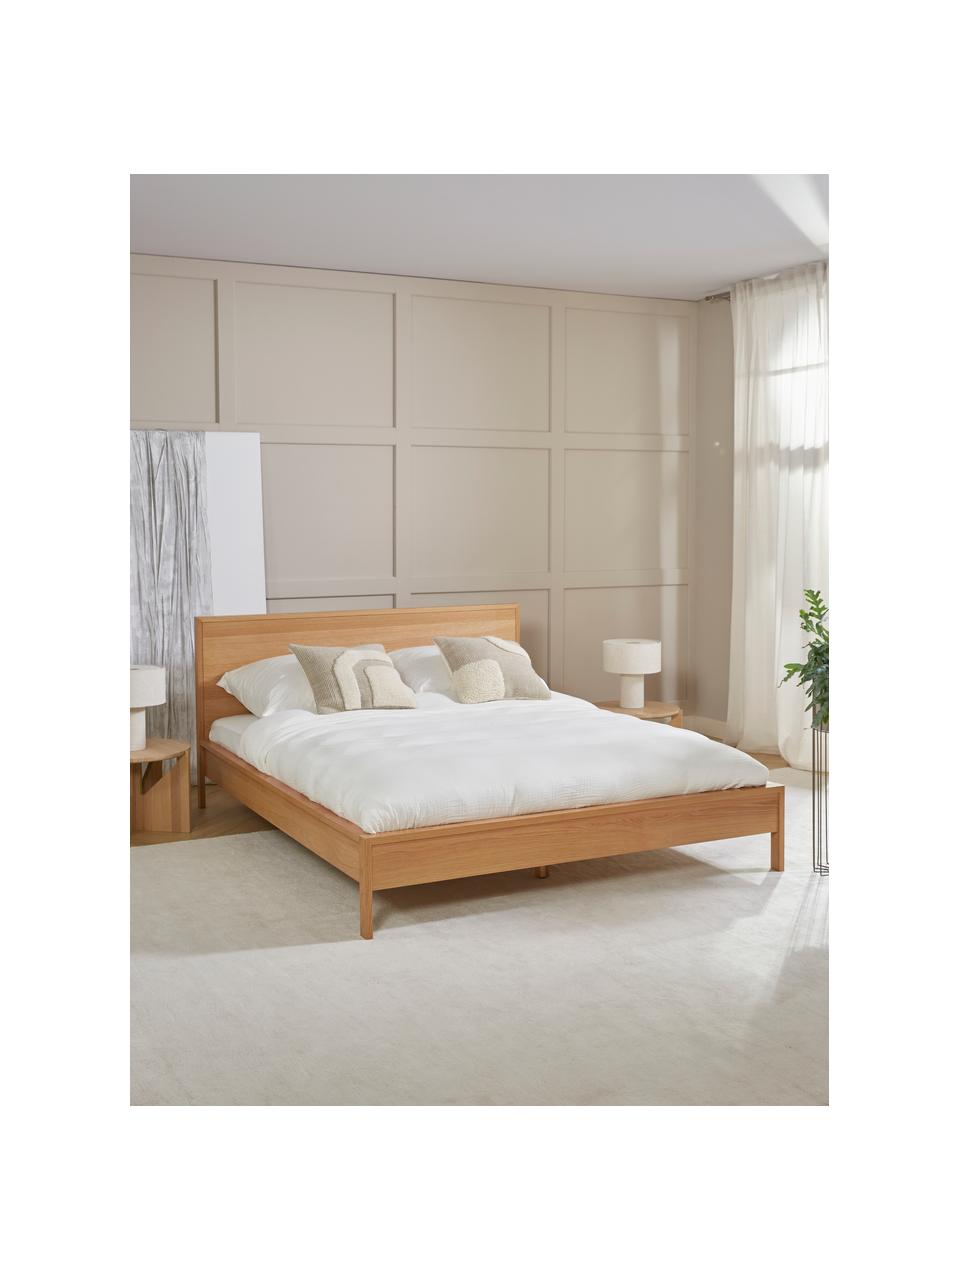 Dřevěná postel s čelem Tammy, Dřevo s dubovou dýhou, Dubové dřevo, 160 x 200 cm